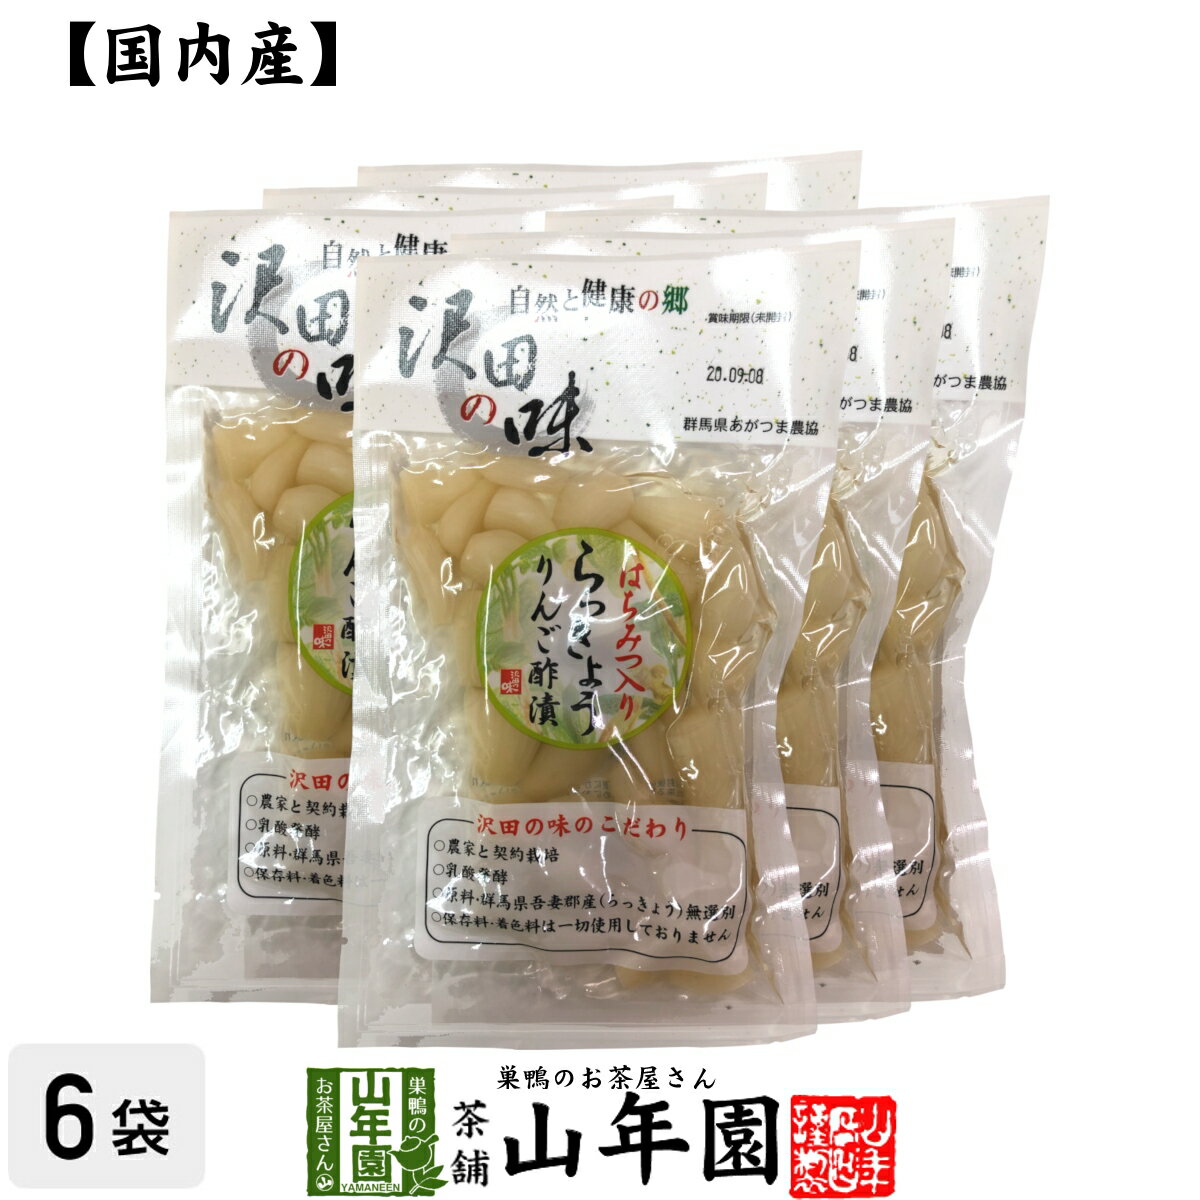 【国産原料使用】沢田の味 らっきょうりんご 甘酢漬 1